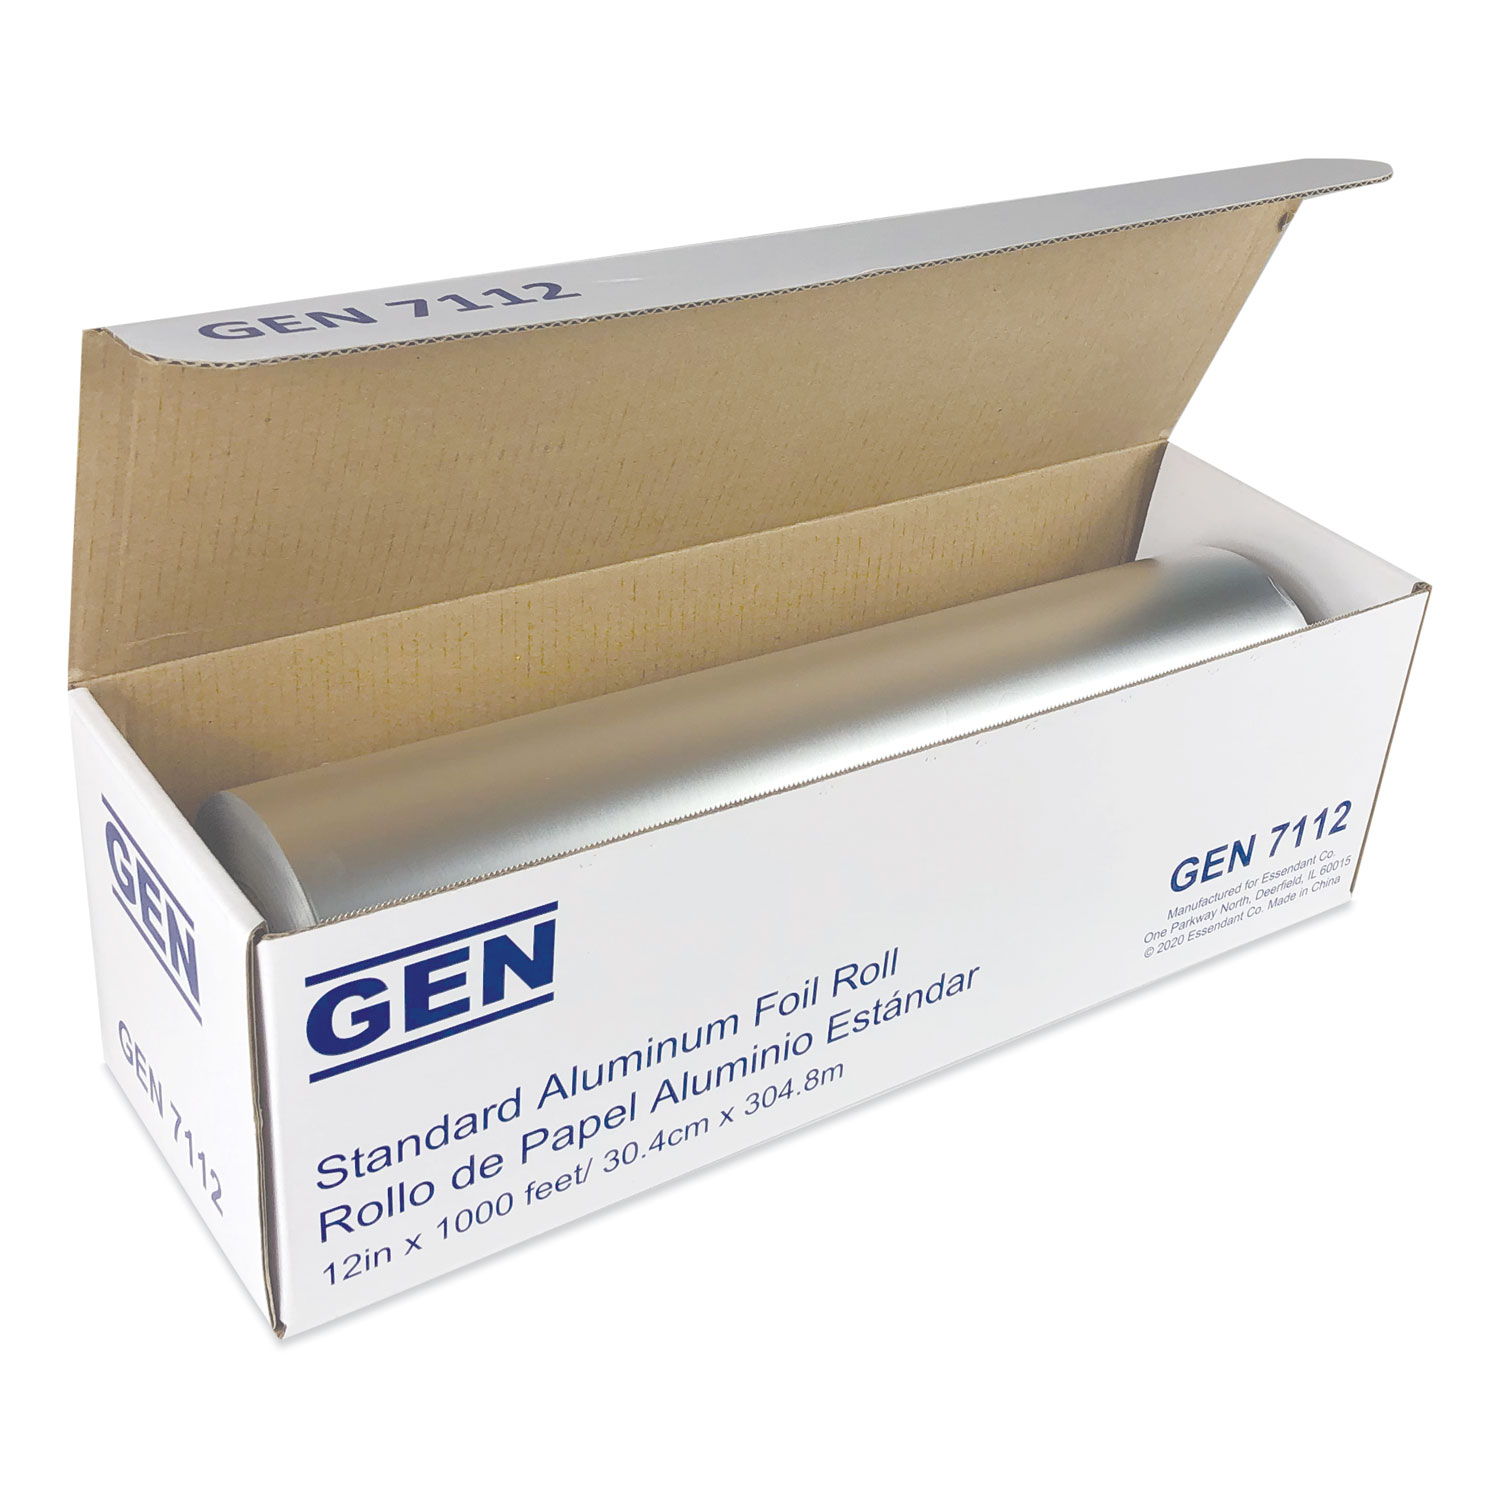  GEN 7112CT Standard Aluminum Foil Roll, 12 x 1,000 ft, 6/Carton (GEN7112CT) 